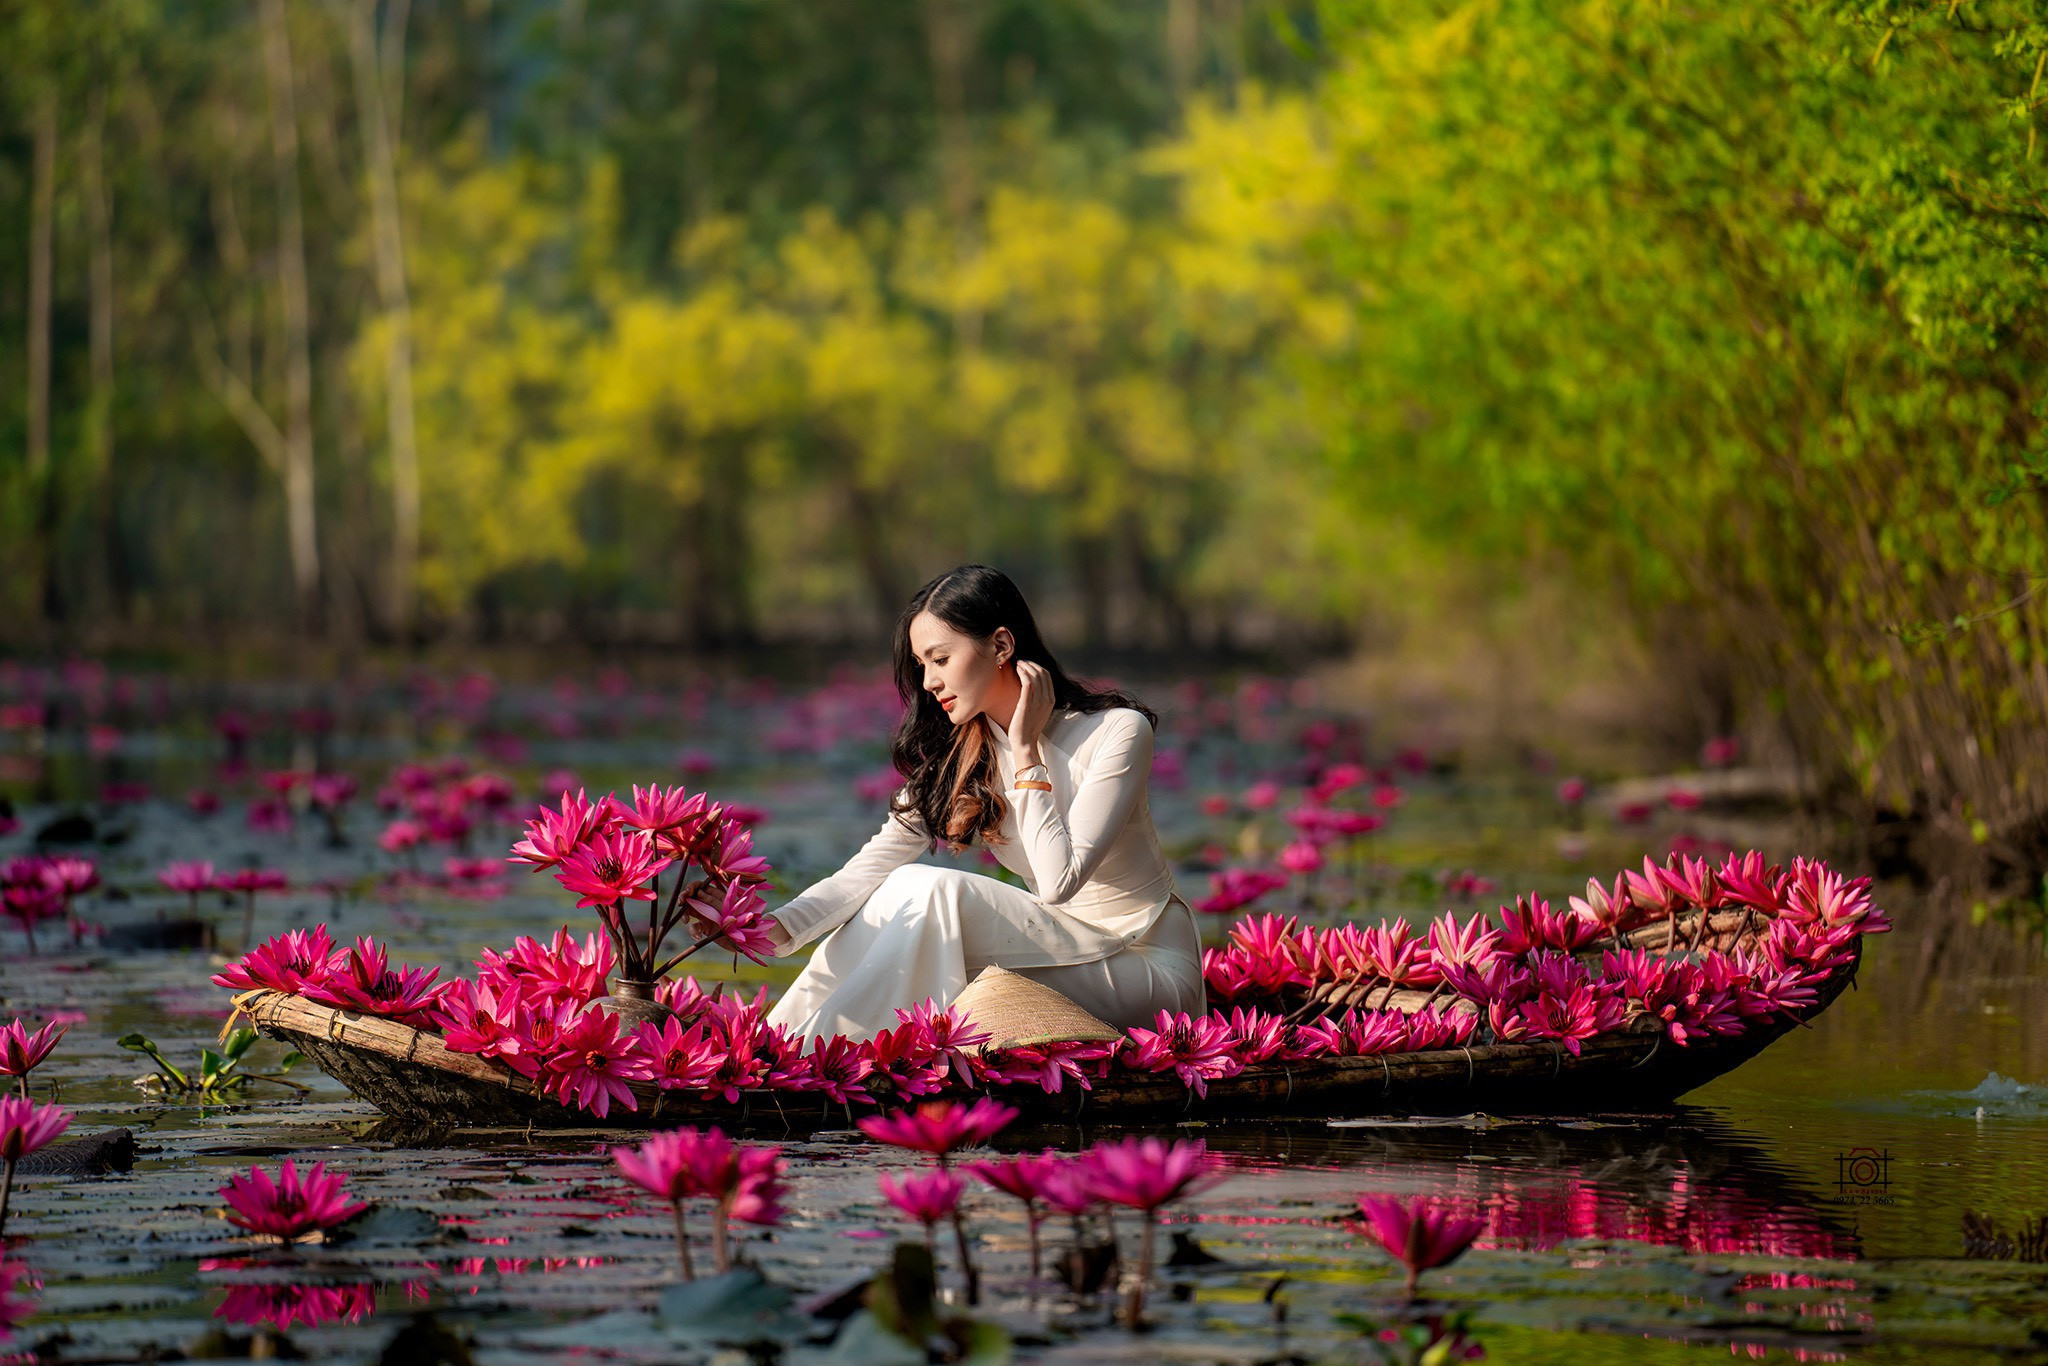 Tới chùa Hương ngắm thiếu nữ rạng ngời bên dòng suối 'nở hoa' - 3